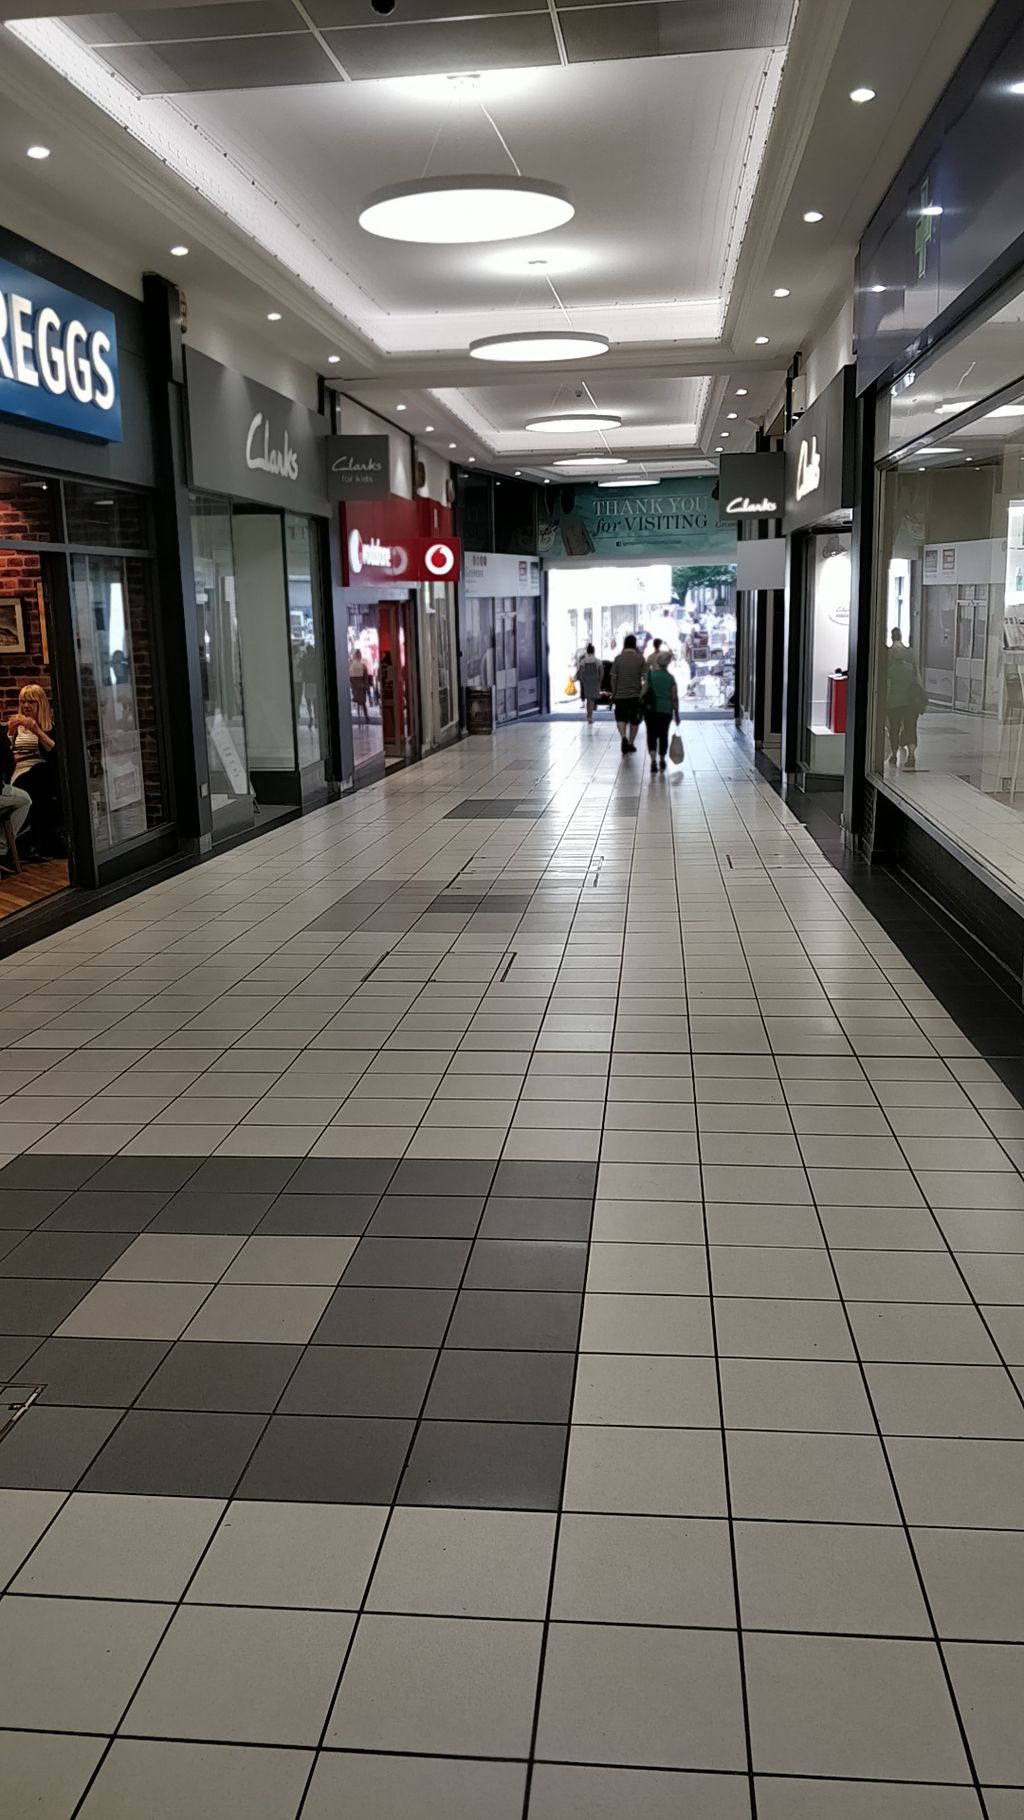 The-Grosvenor-Shopping-Centre